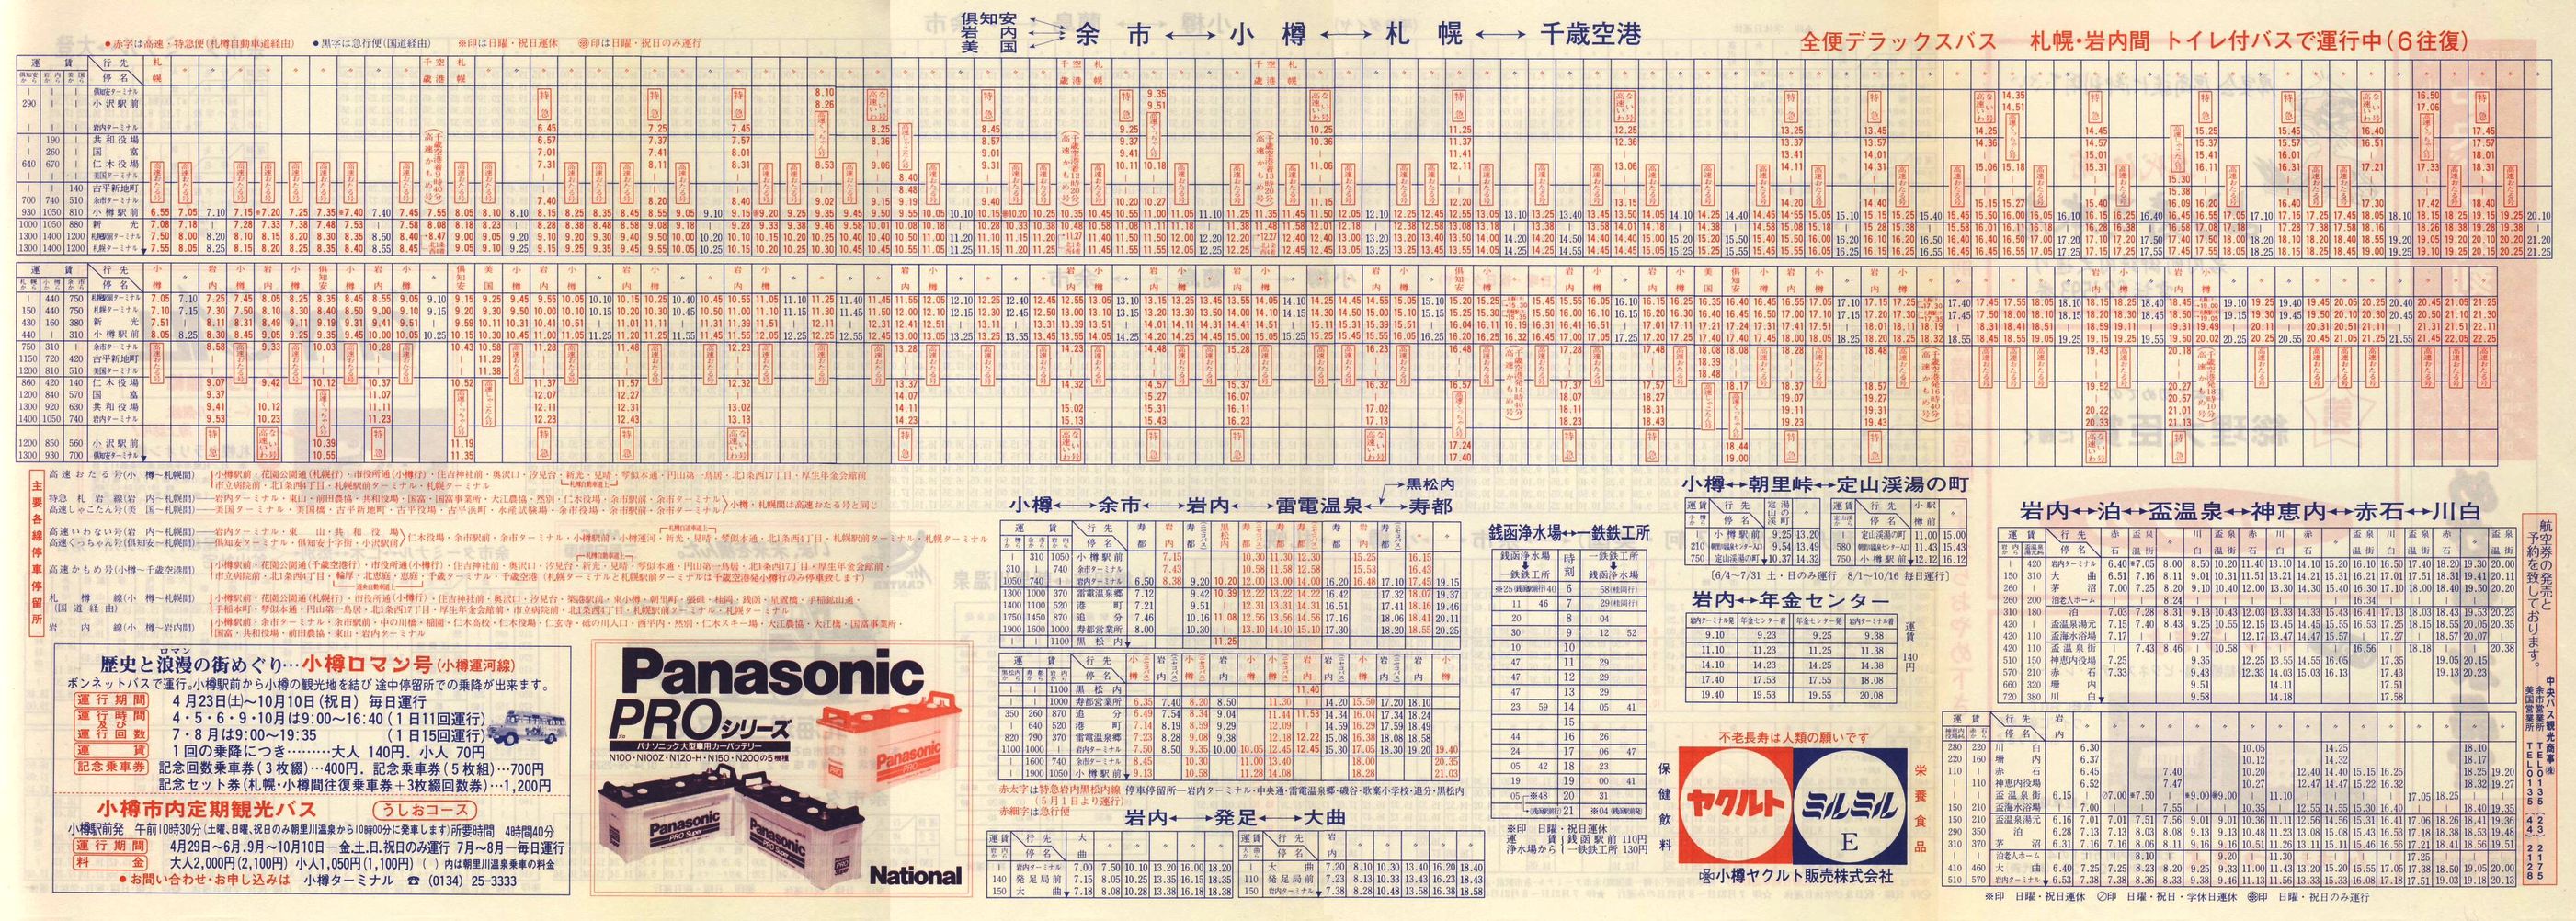 1988-04-10改正_北海道中央バス(小樽)_小樽事業部管内郊外線時刻表裏面